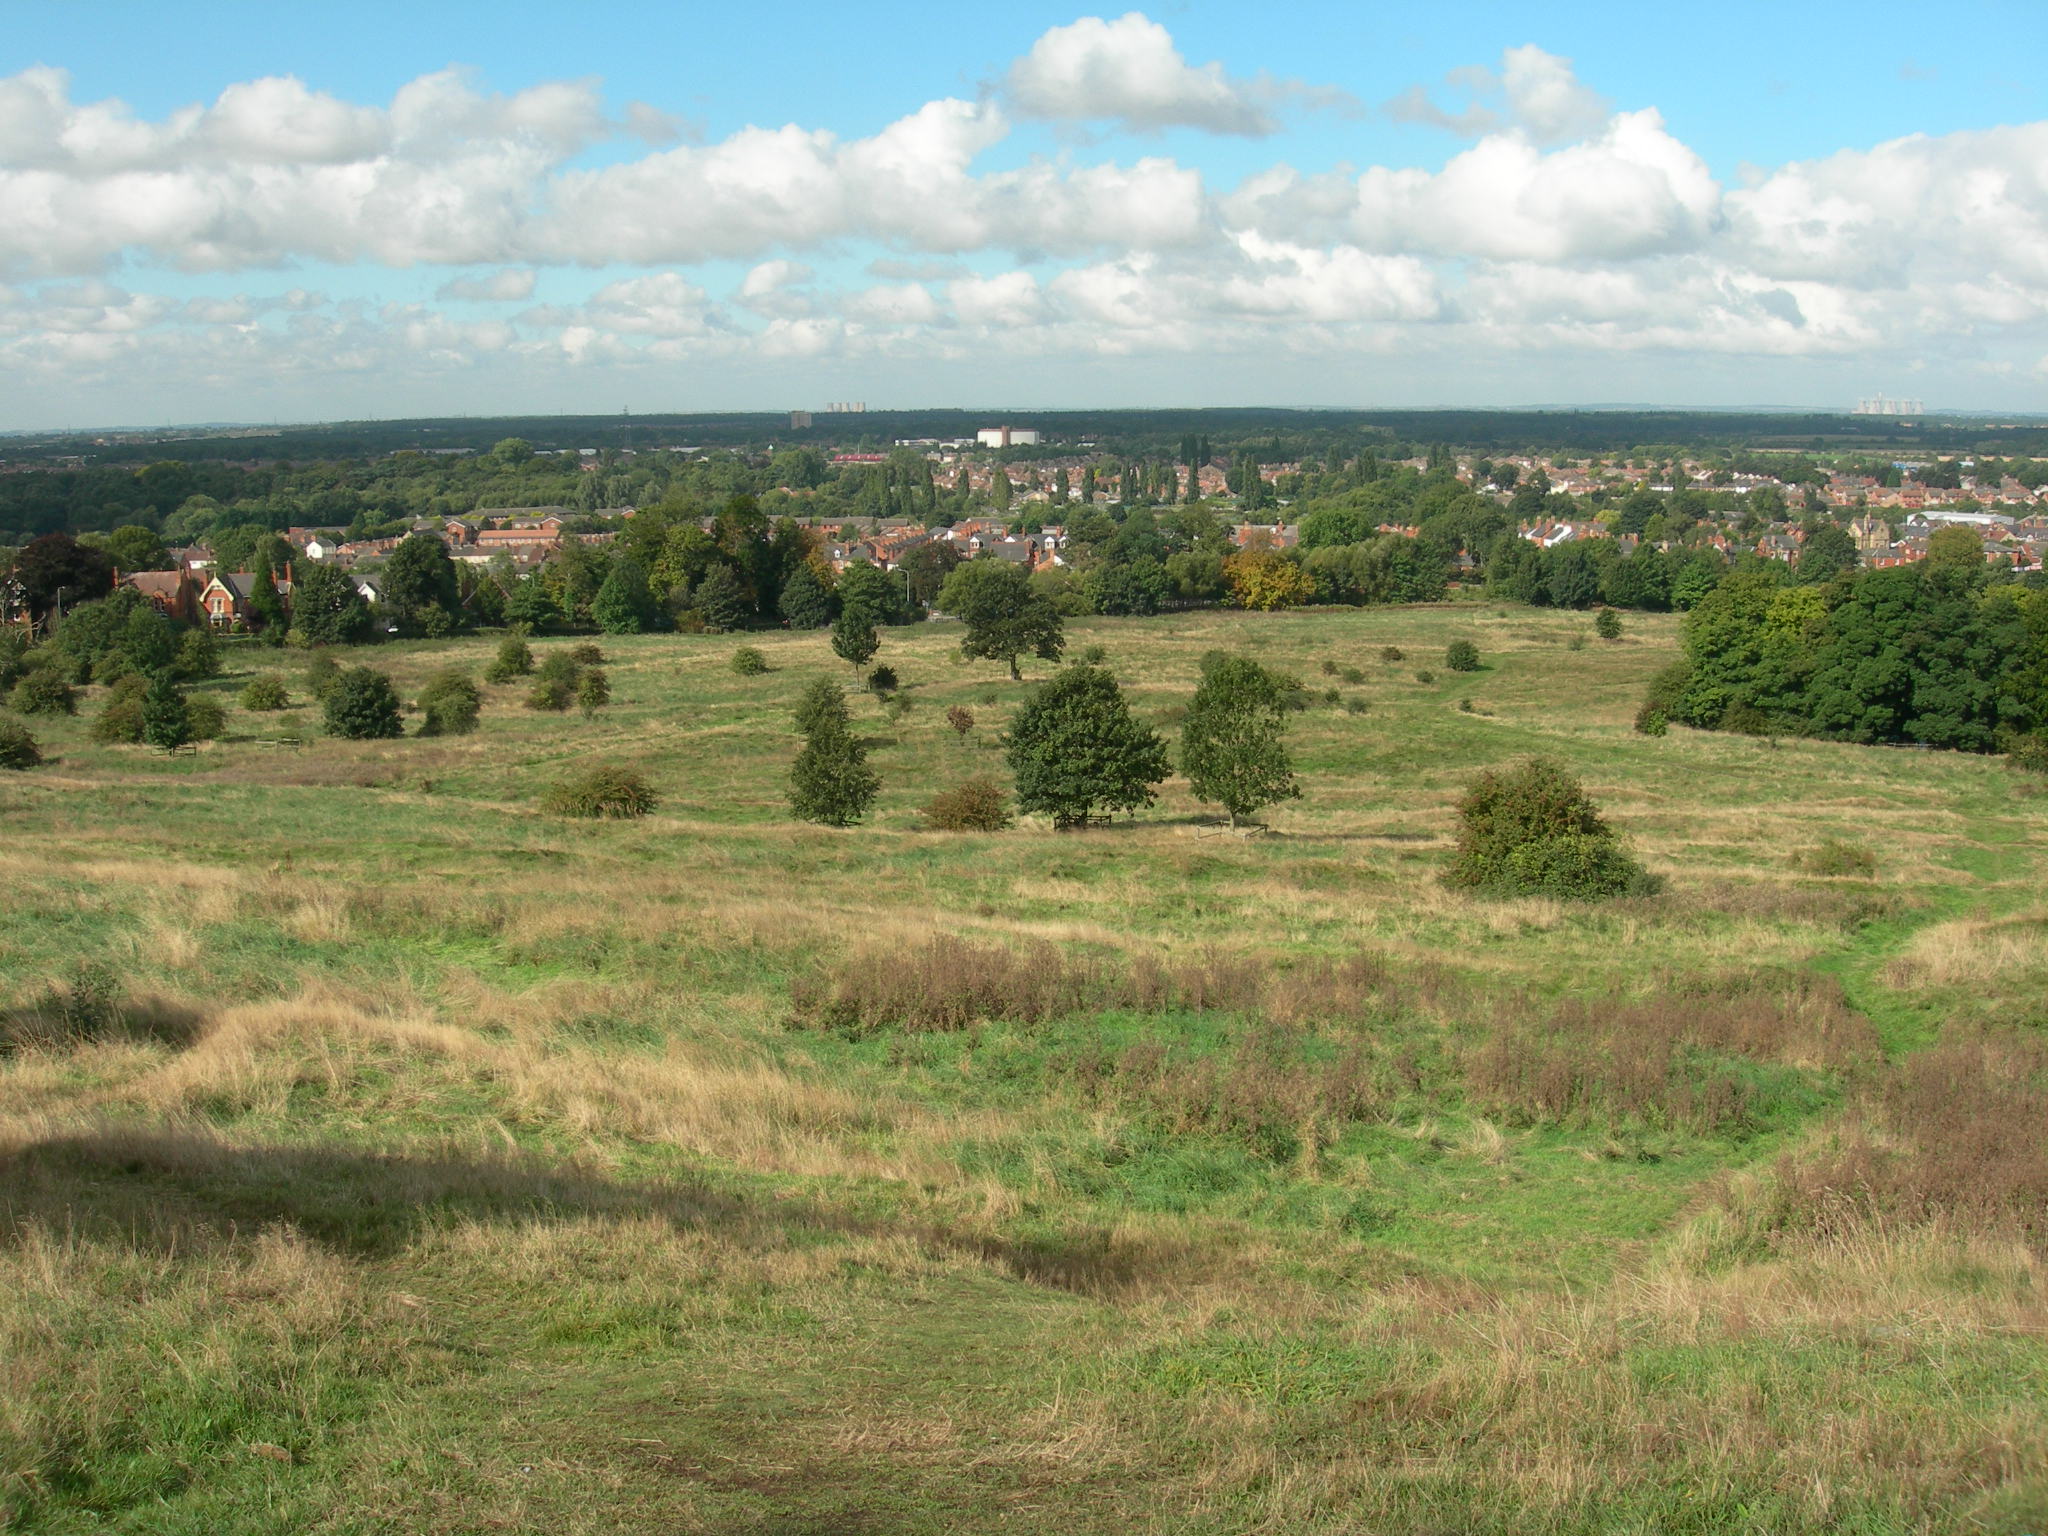 South common landscape